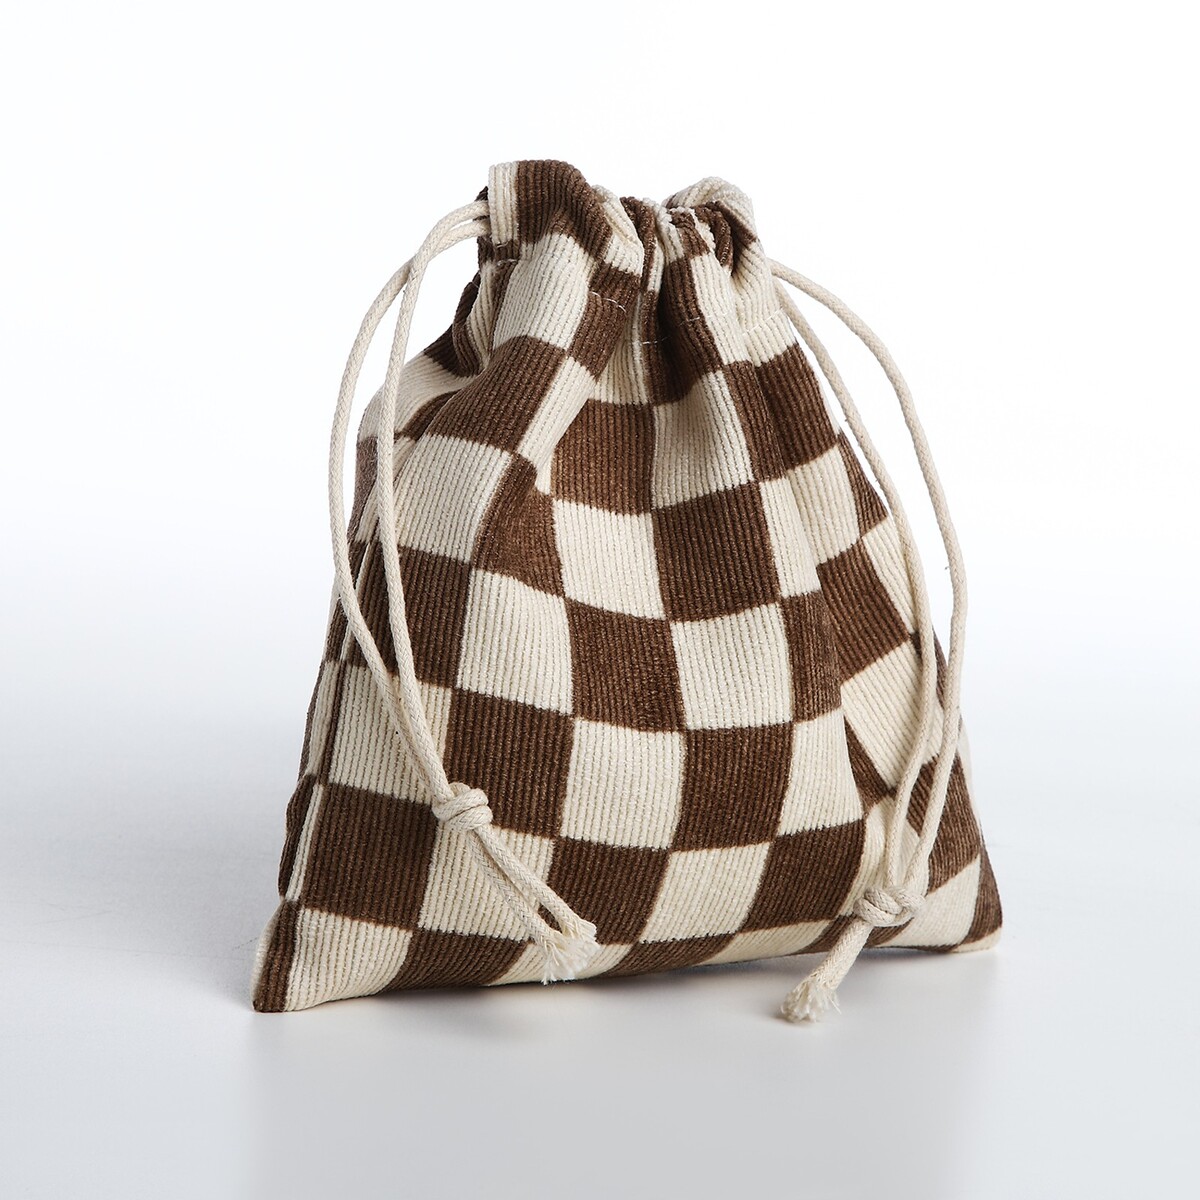 Косметичка - мешок с завязками, цвет бежевый/коричневый сумка мешок на молнии коричневый